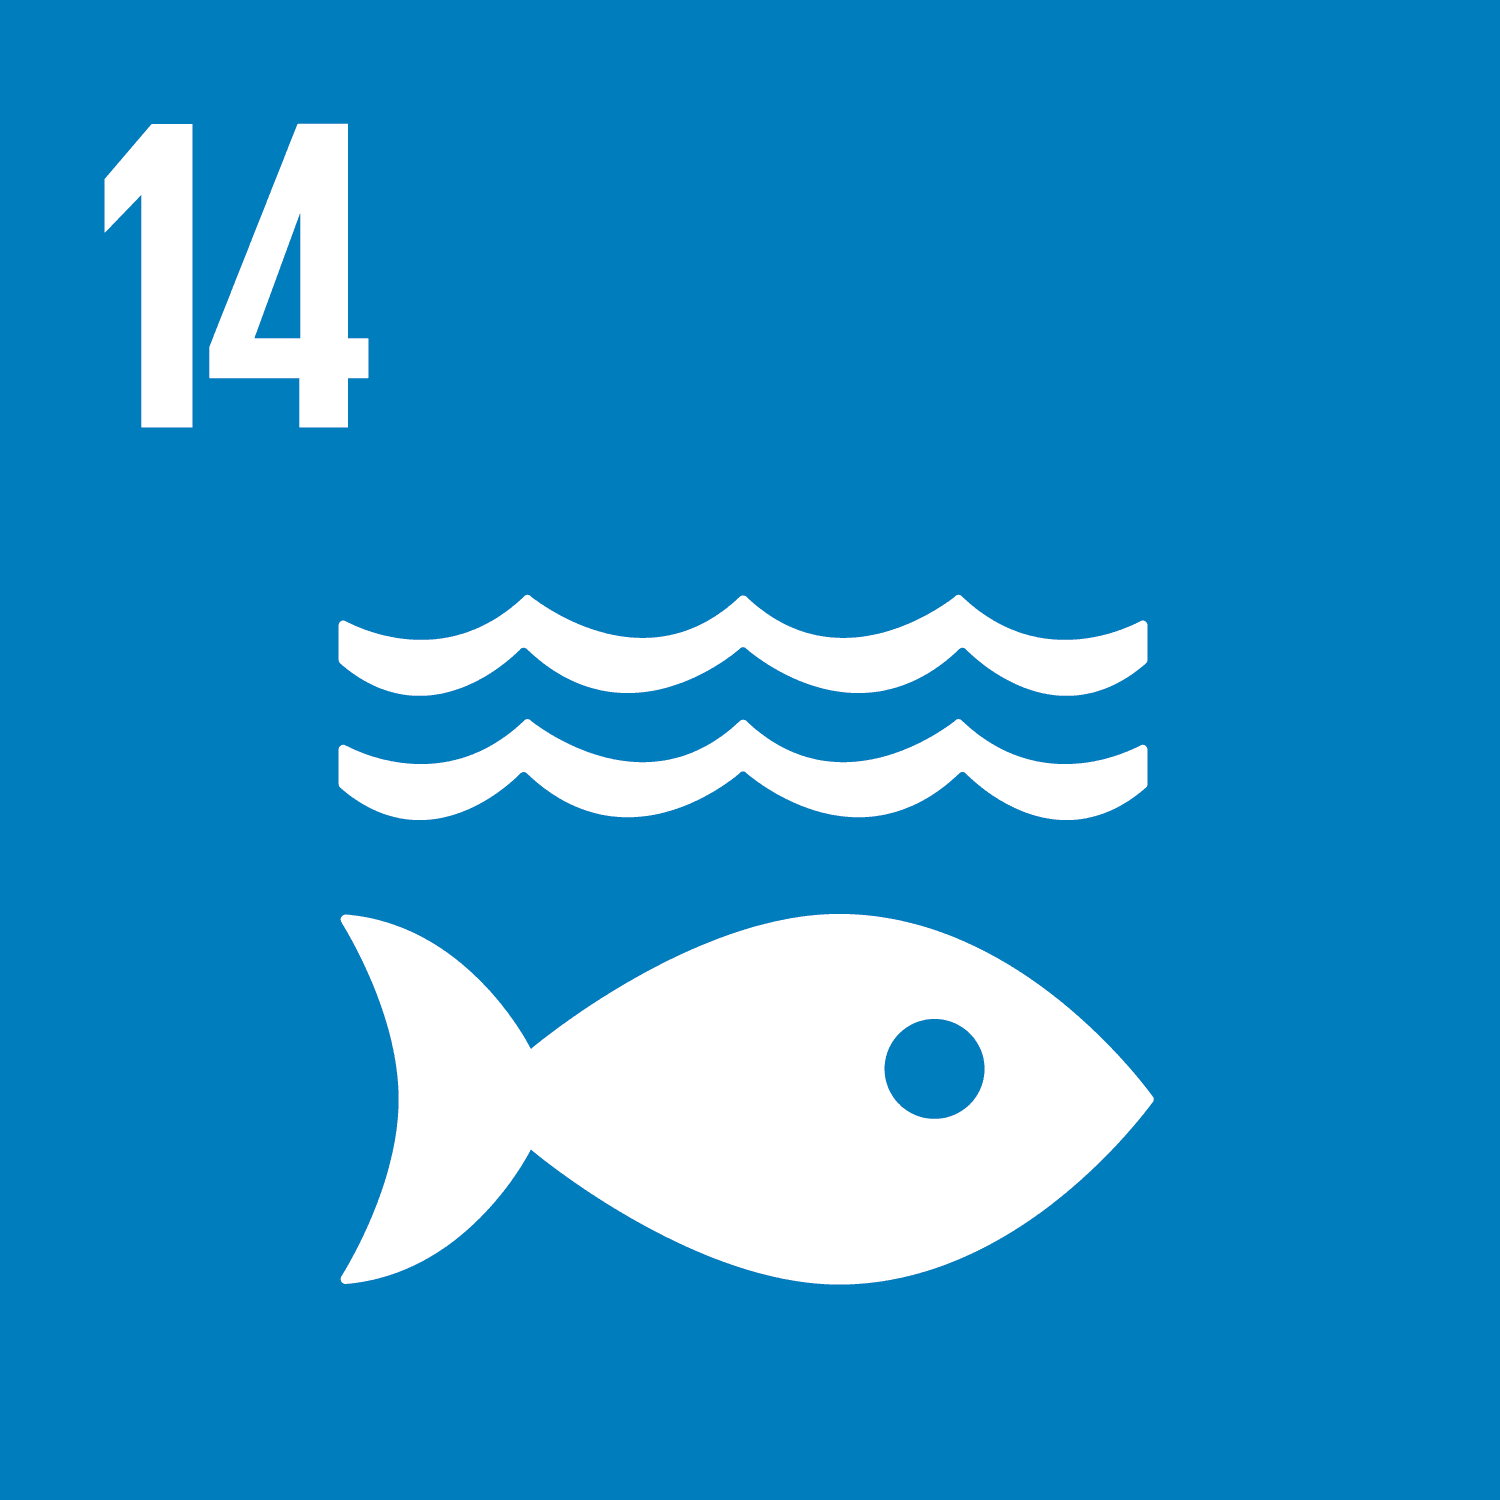 SDG 14. Life below water.